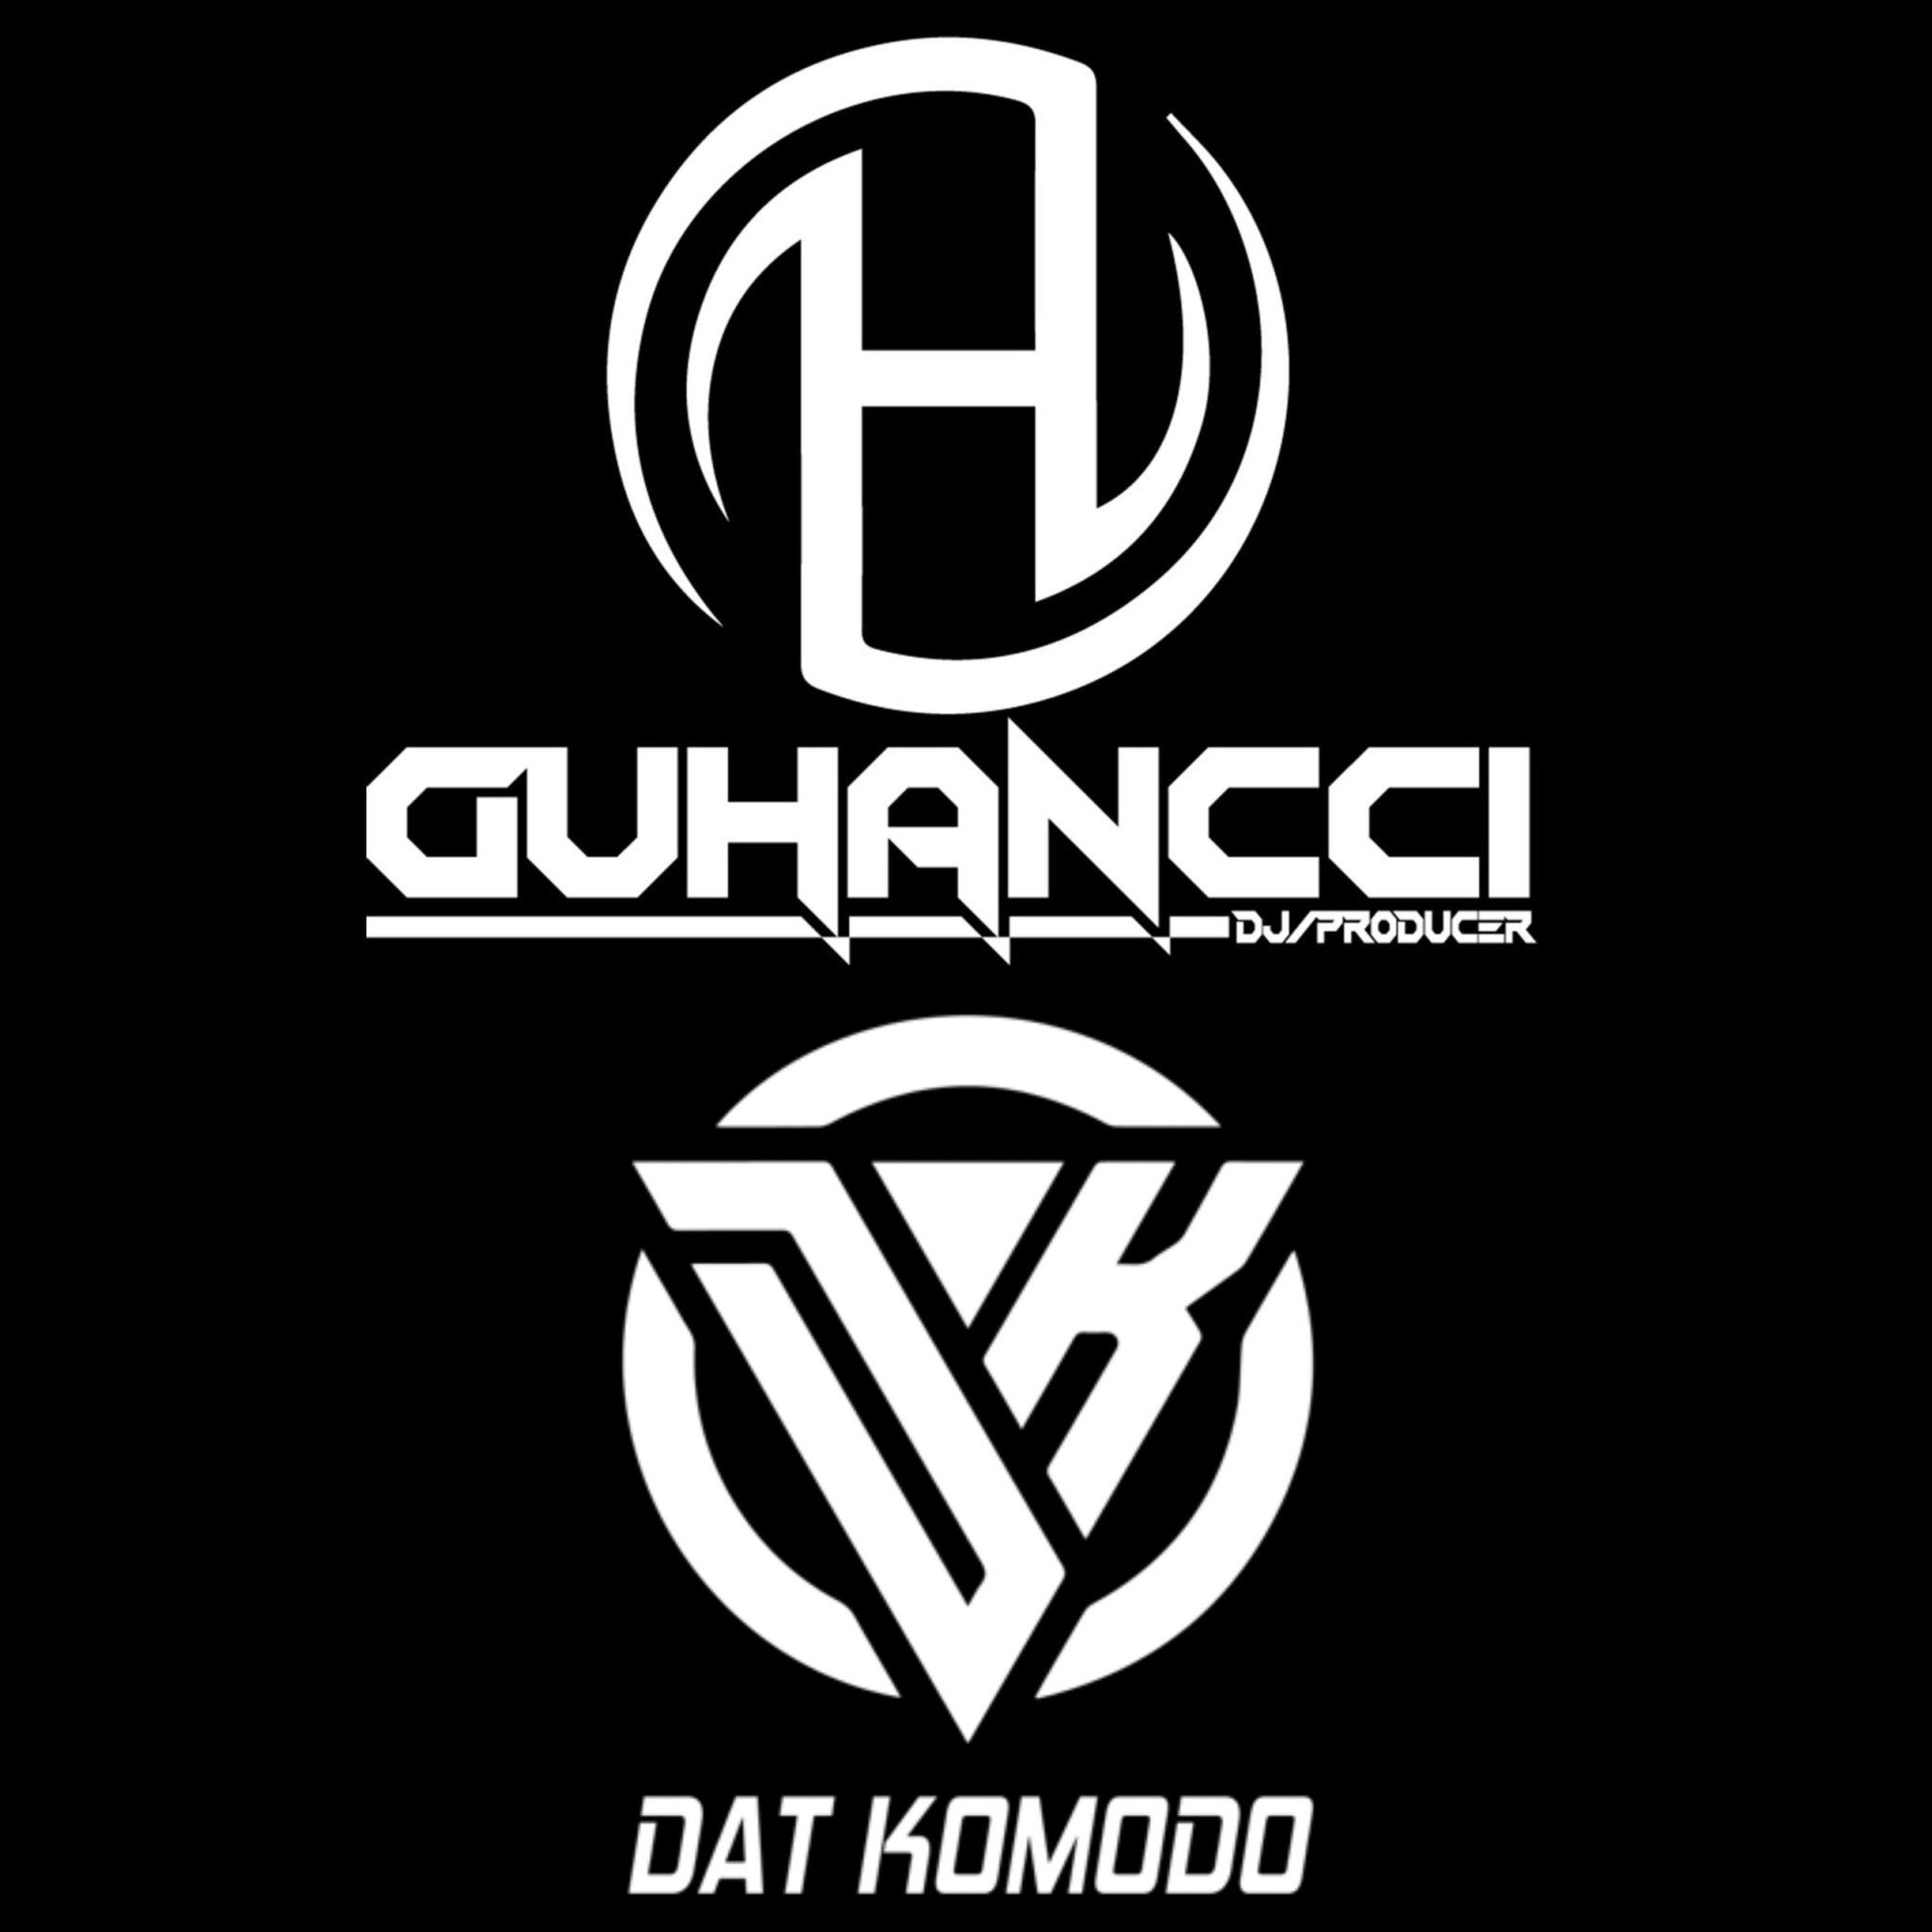 Download Express Music - DatKomodo ft guHancci (guHancci Team)